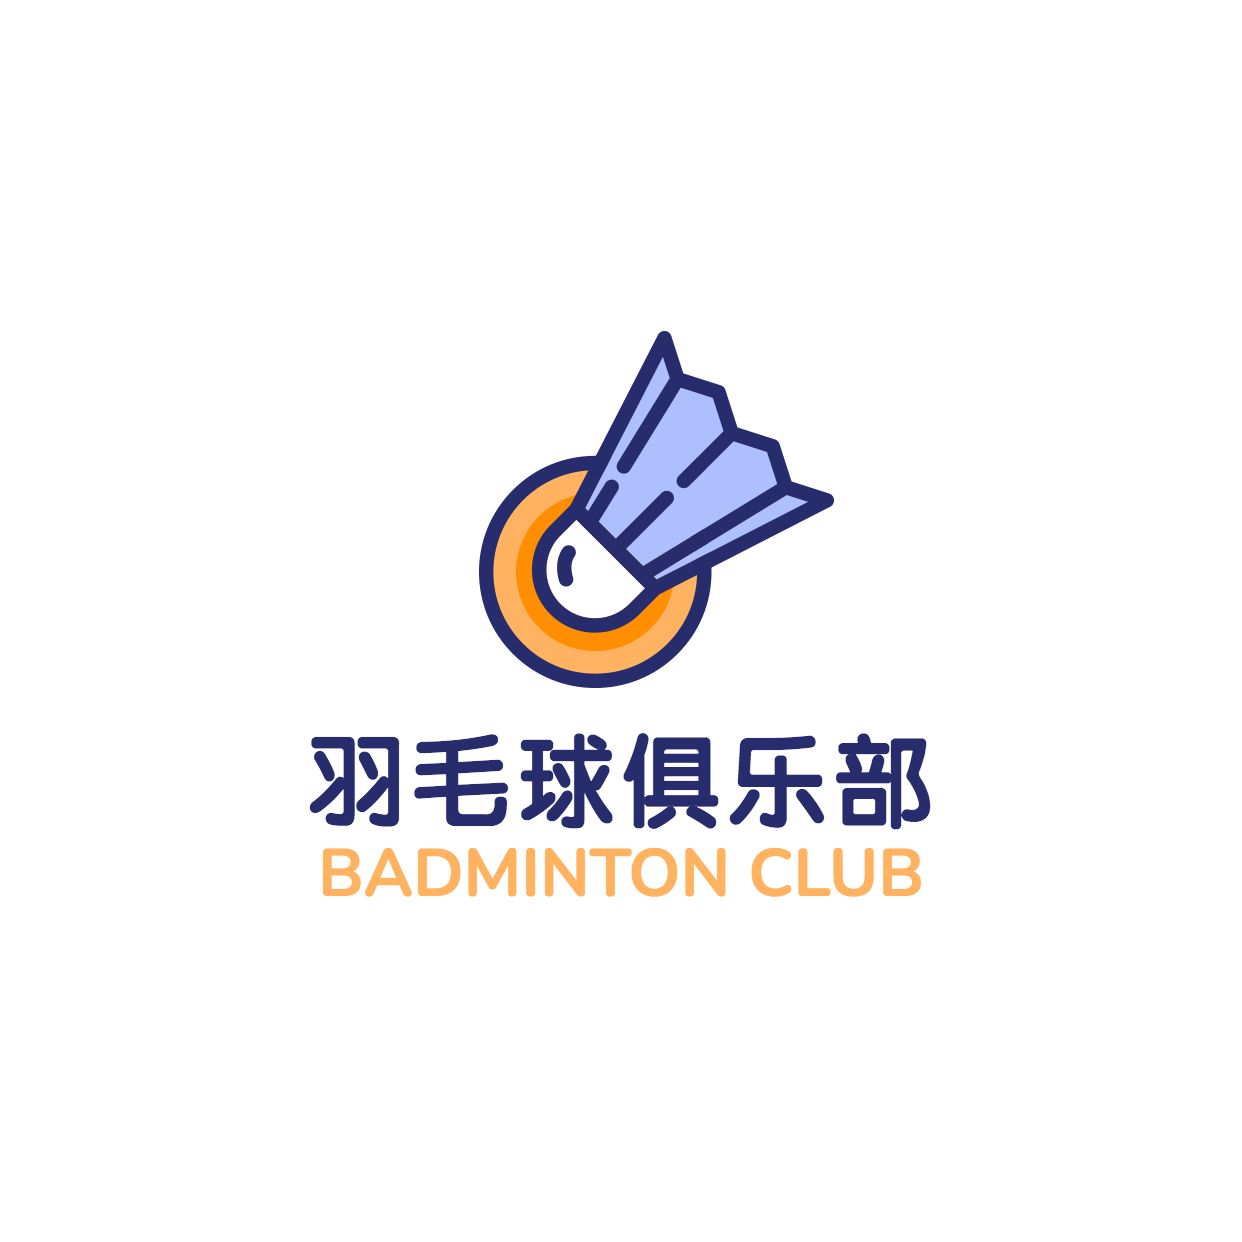 羽毛球俱乐部培训头像logo